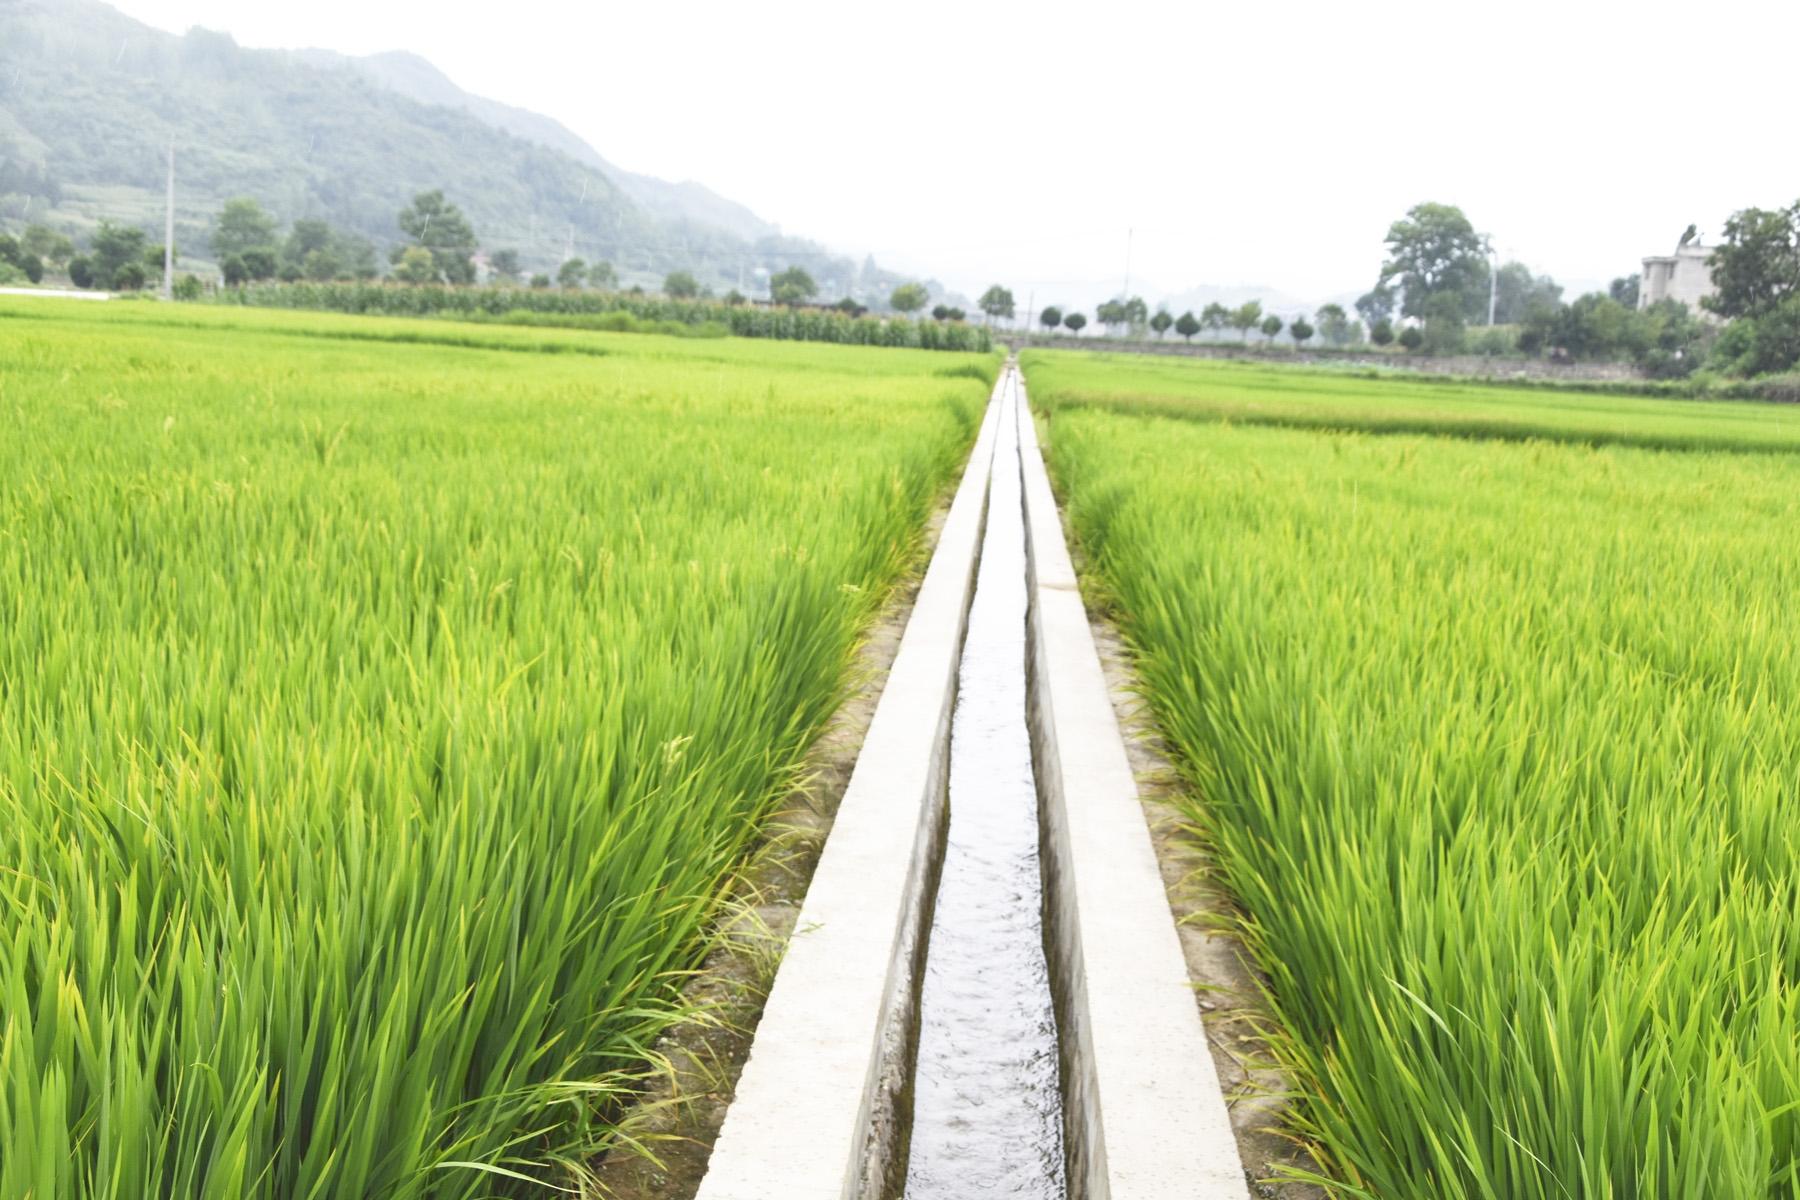 绿油油的水稻、笔直的沟渠、成行的树林构成一幅山村田园美景图。